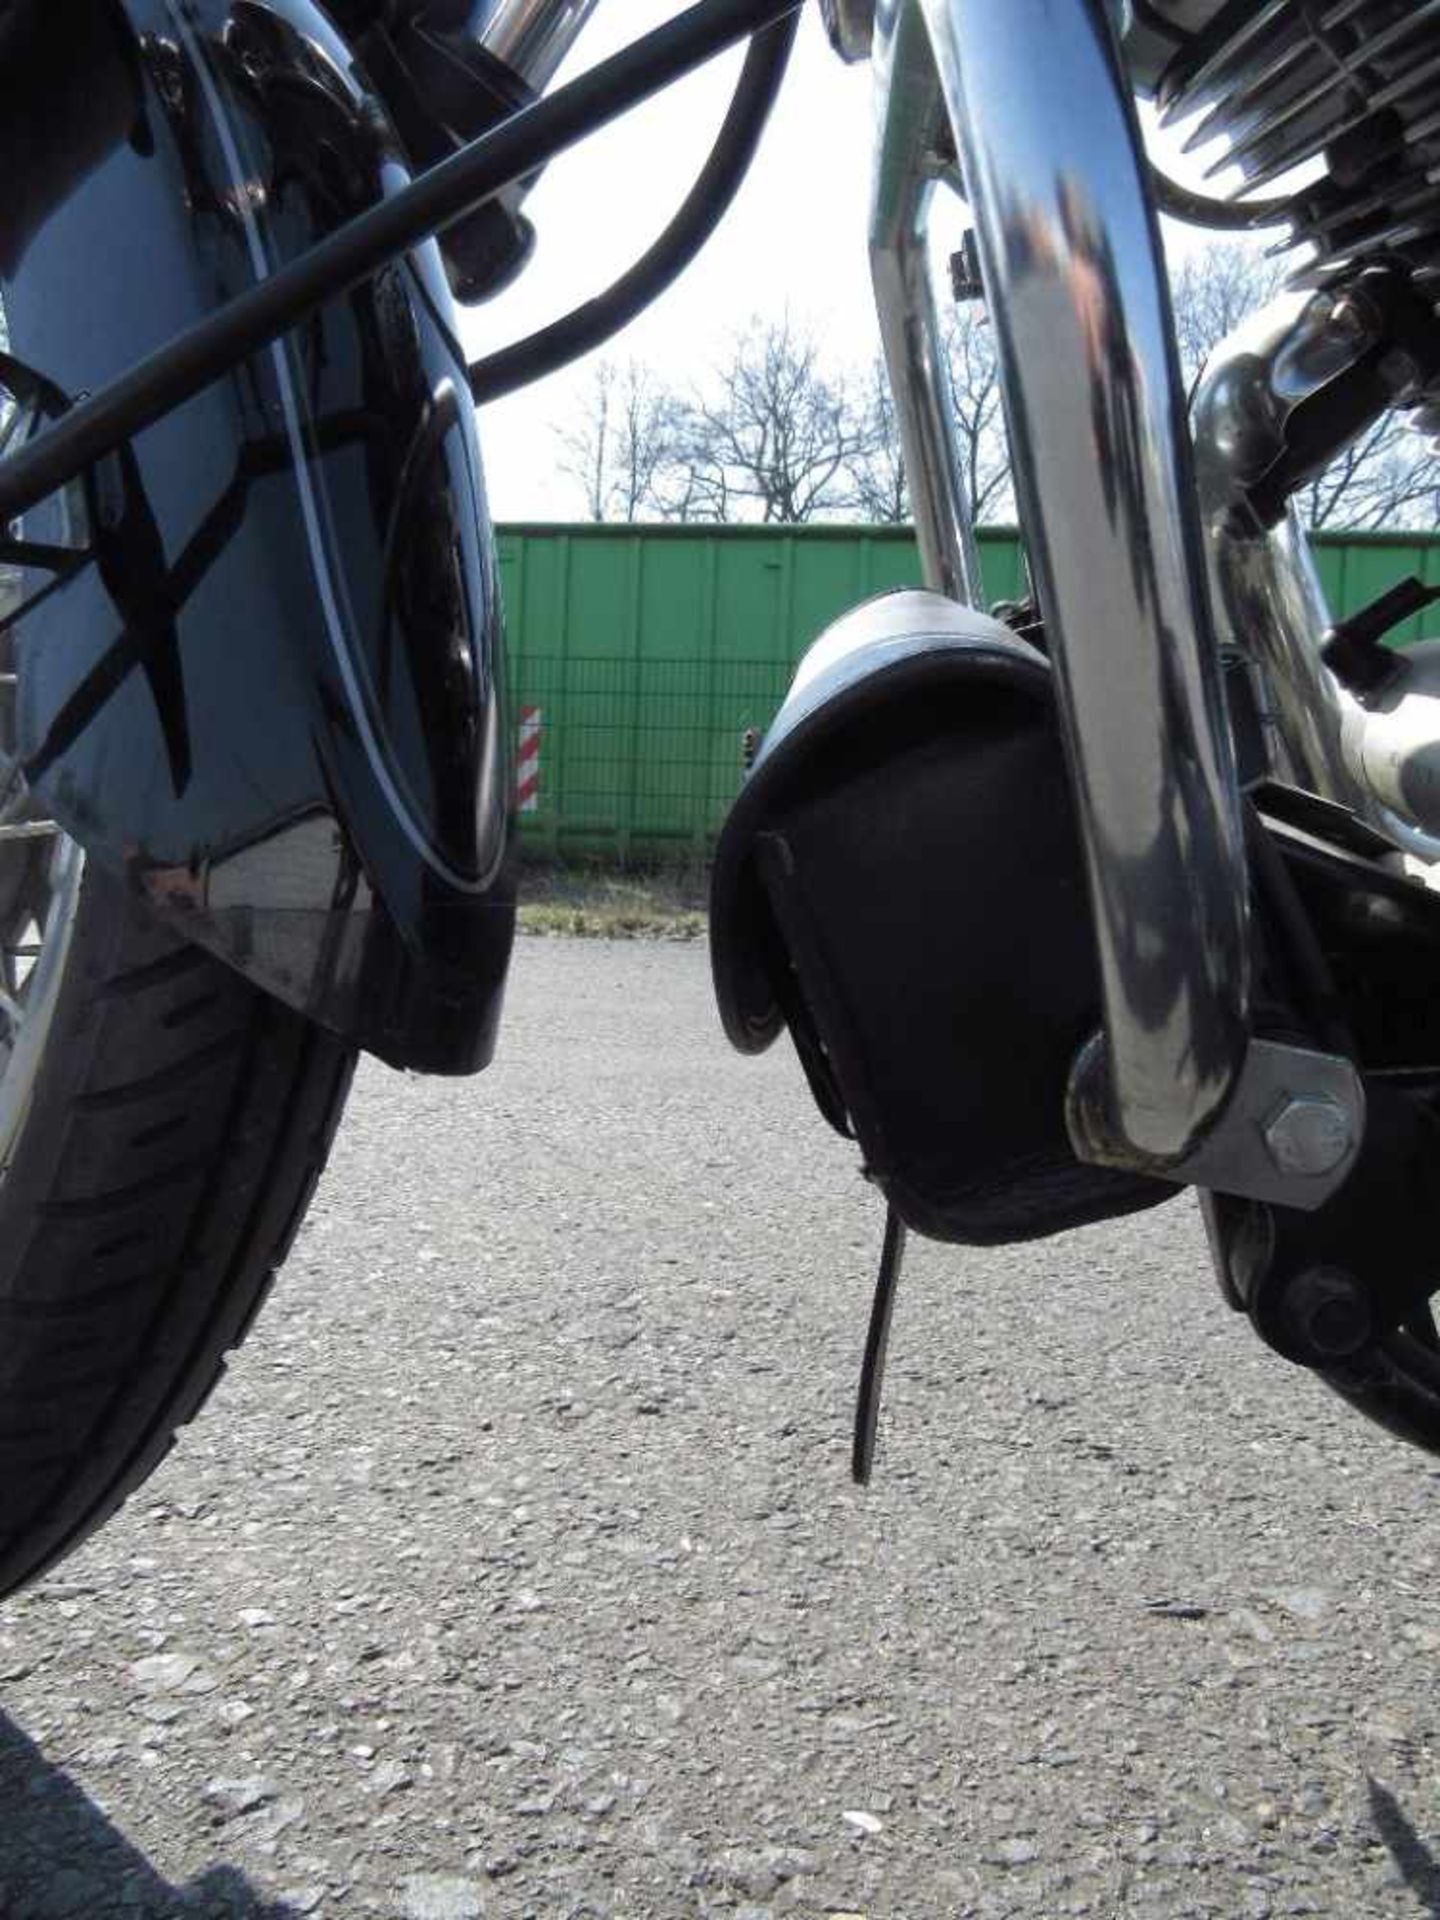 Yamaha Motorrad XVS125H guter Zustand läuft Batterie muss erneuert werden stand 2 jahre - Bild 19 aus 25